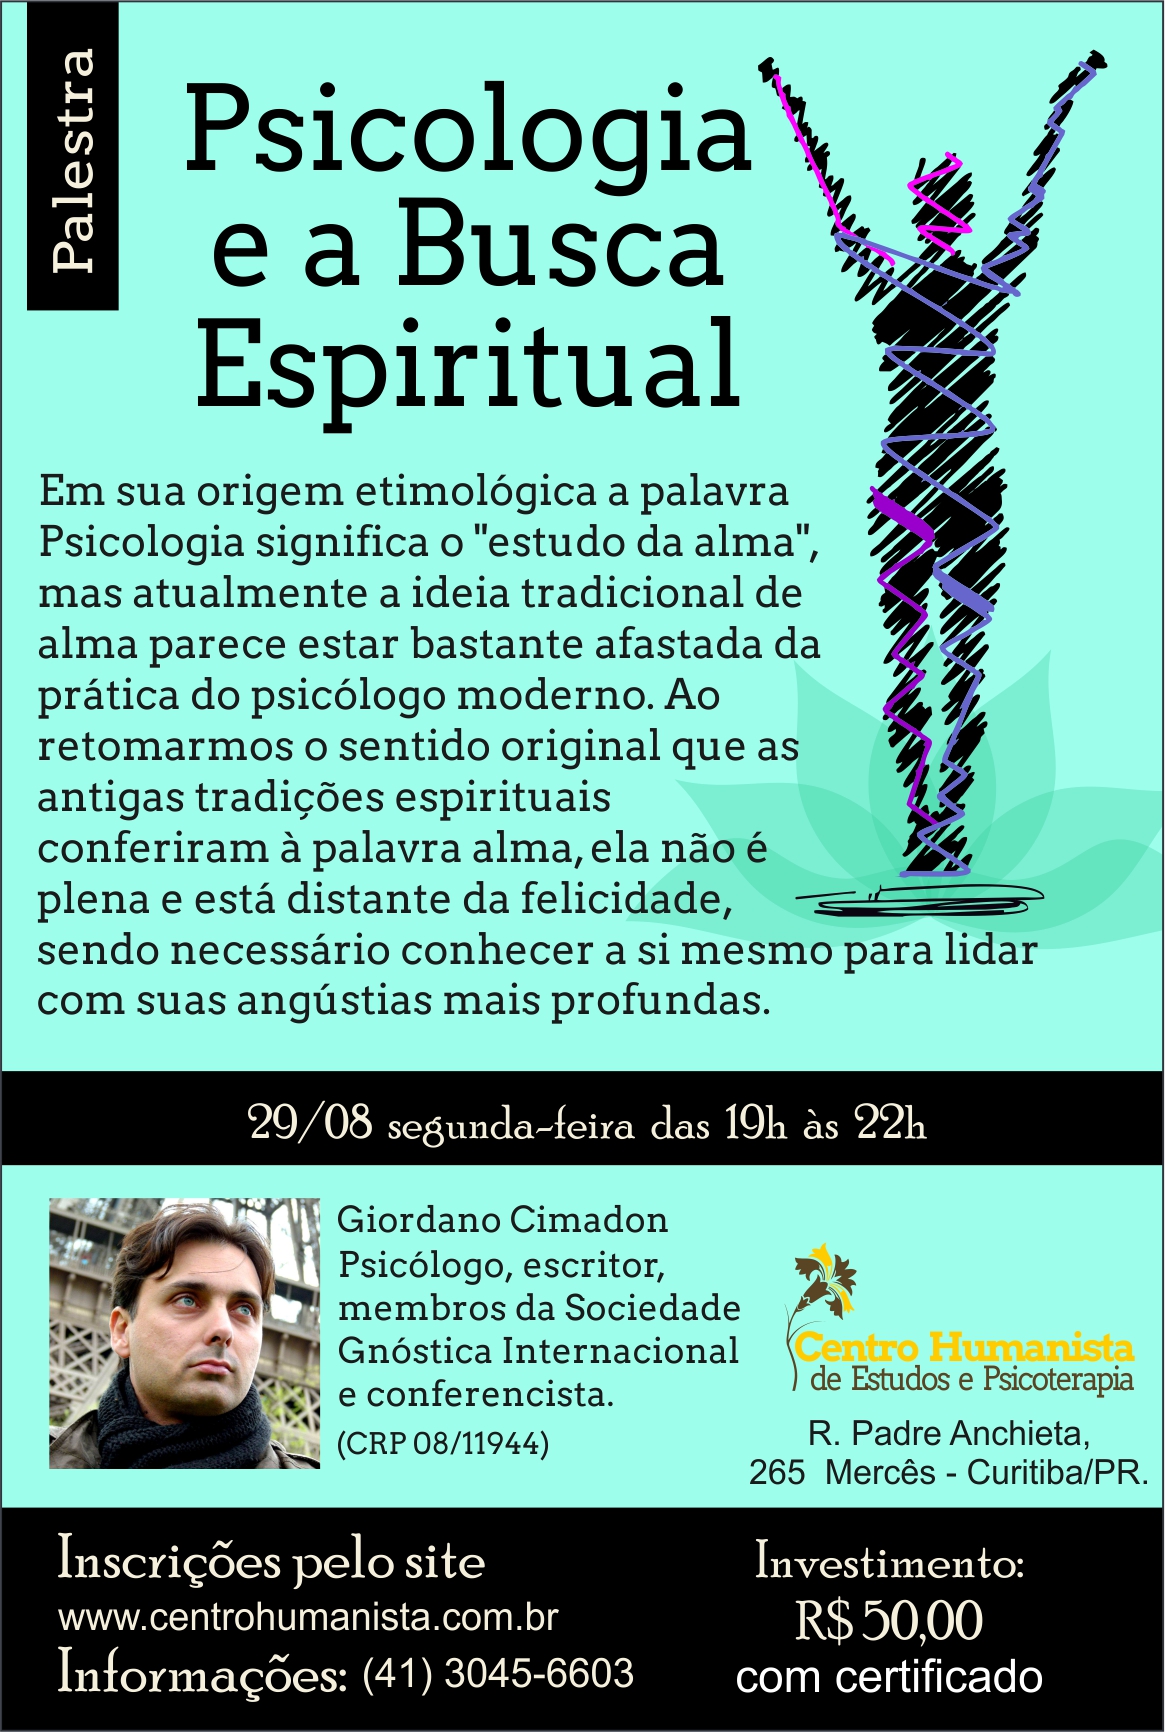 Psicologia e a Busca Espiritual - Curitiba PR